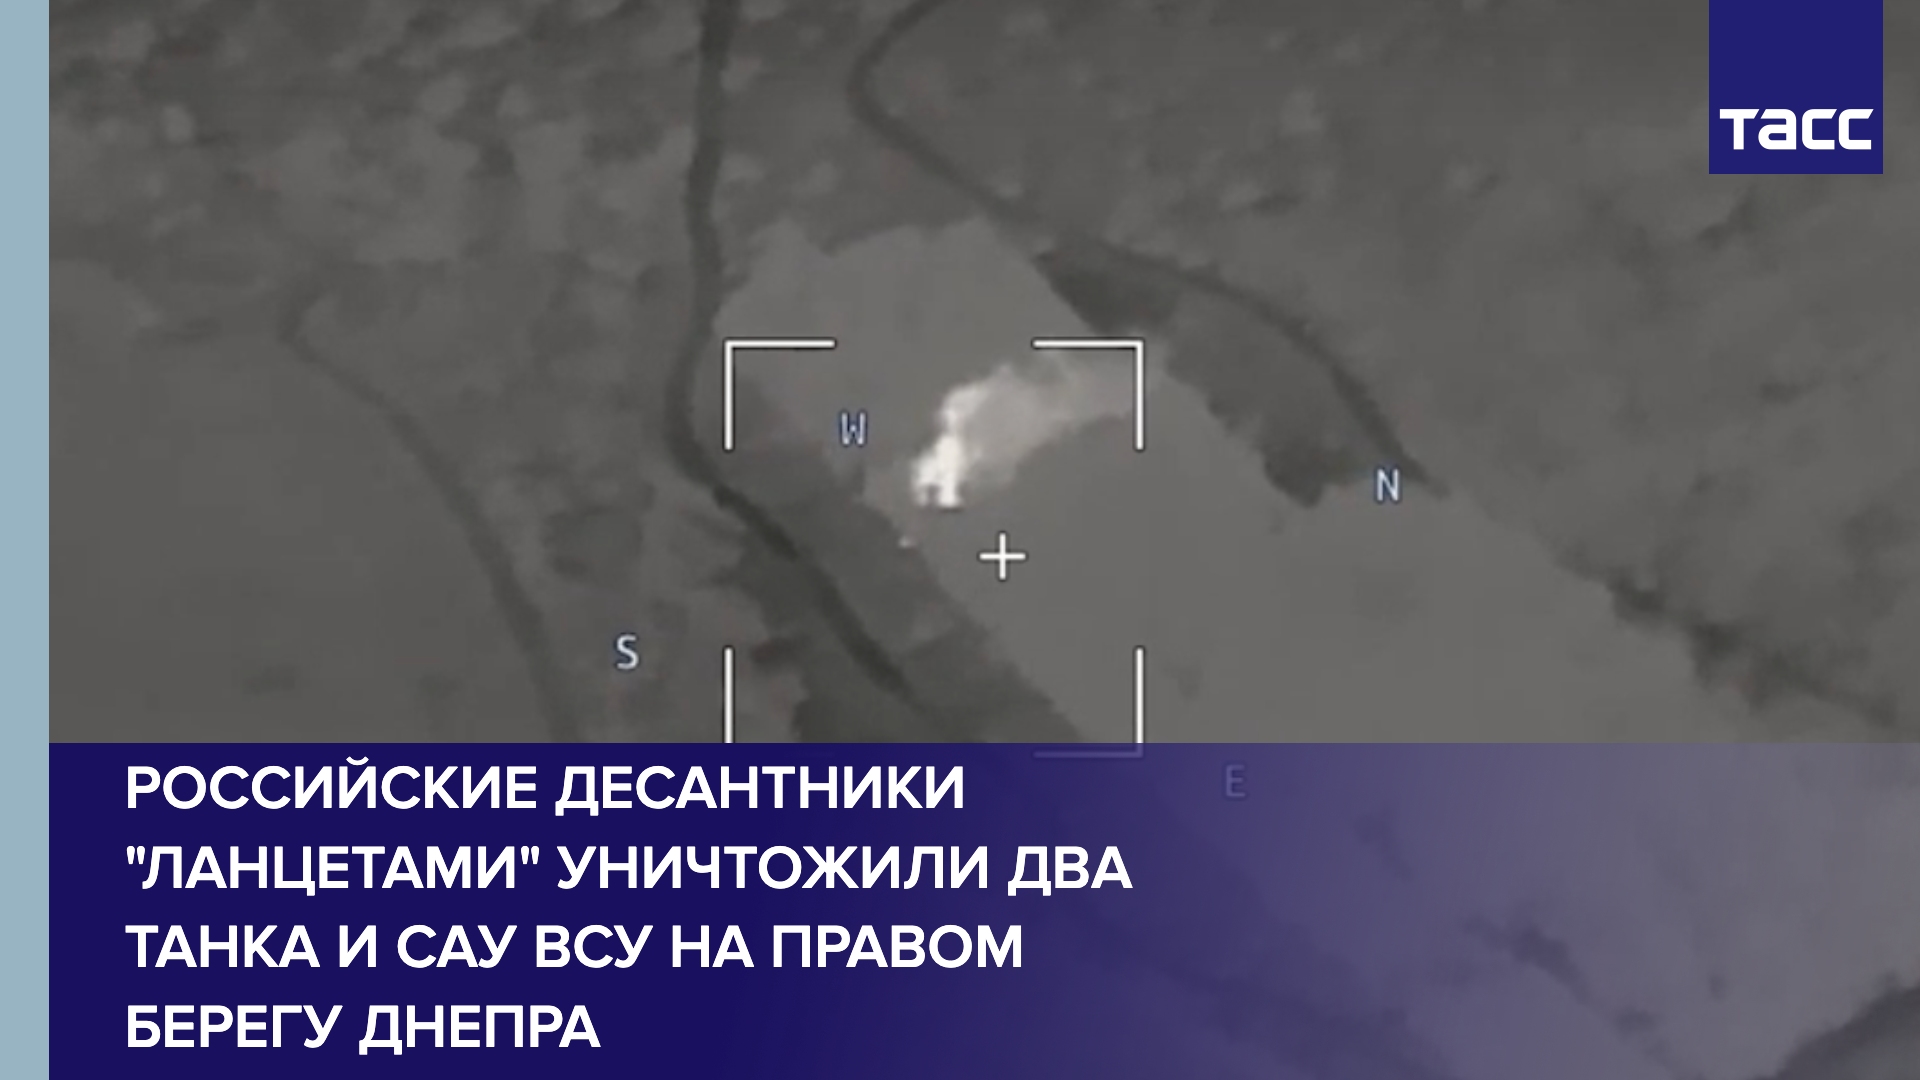 Российские десантники "Ланцетами" уничтожили два танка и САУ ВСУ на правом берегу Днепра